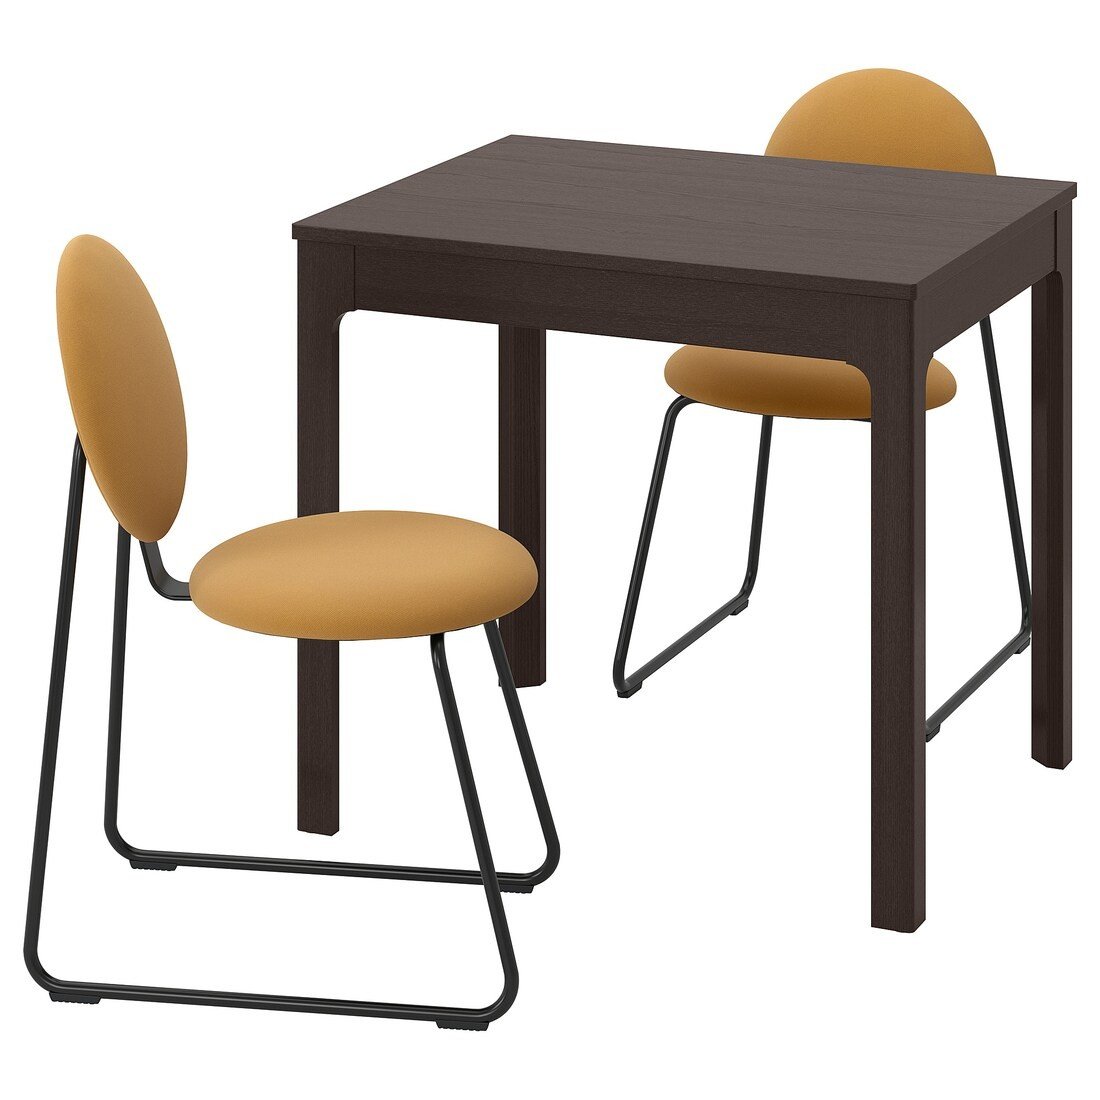 EKEDALEN / MÅNHULT Стіл та 2 стільці, темно-коричневий / Hakebo медово-коричневий, 80/120 см